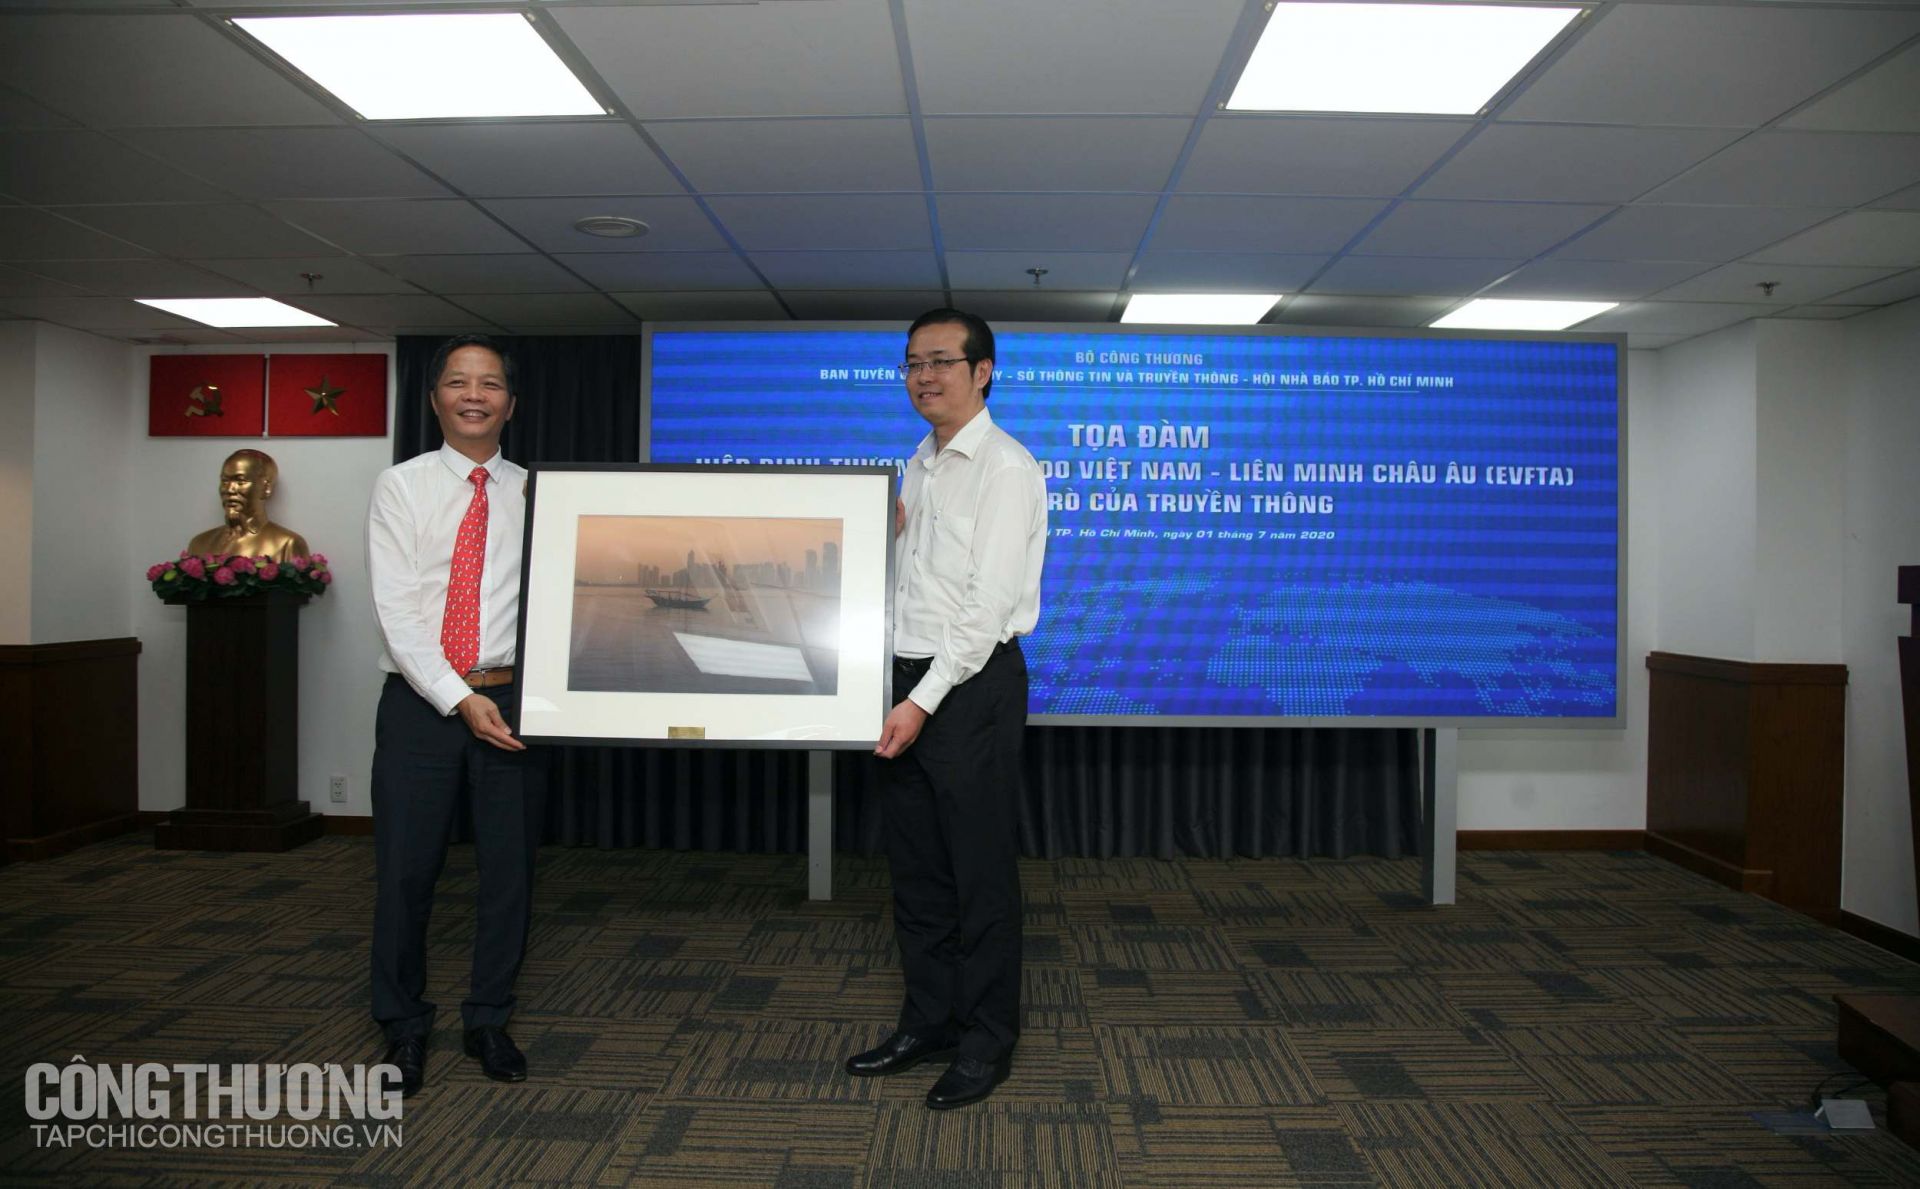 Bộ Trưởng Bộ Công Thương Trần Tuấn Anh tặng quà lưu niệm cho Ban Tuyên Giáo Thành ủy TP. HCM